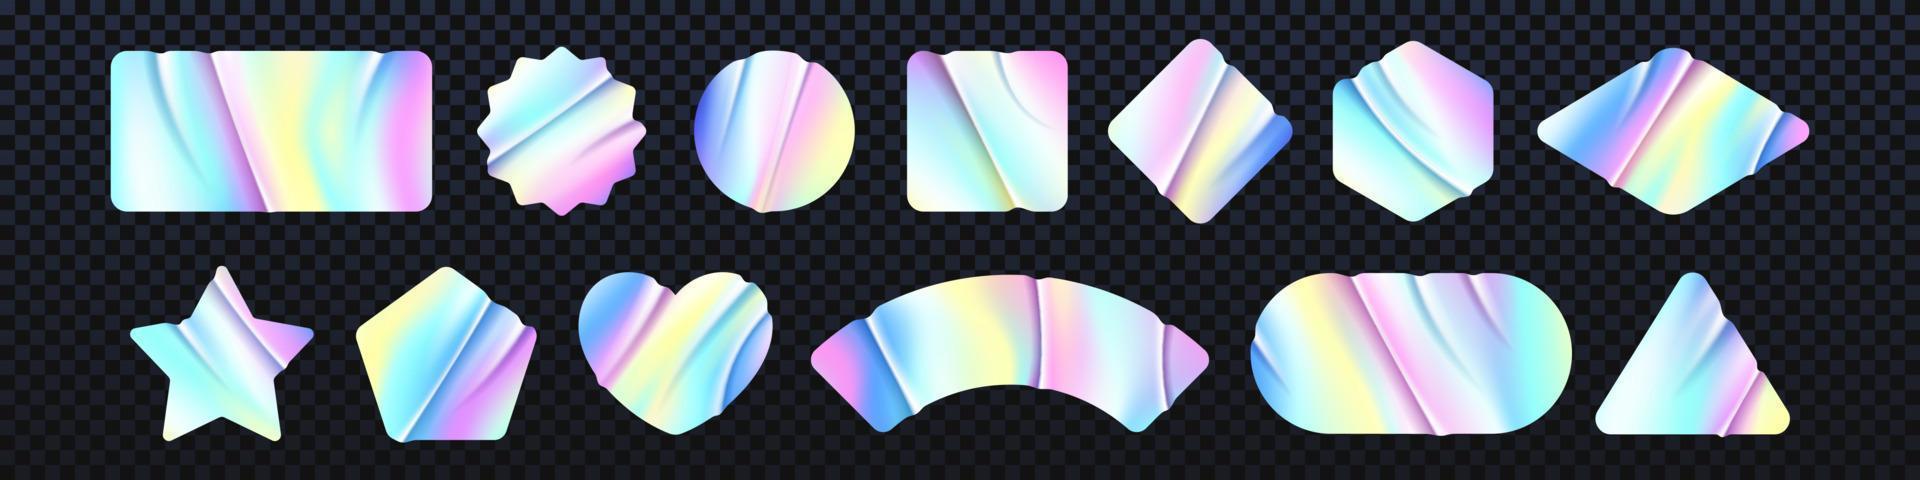 holográfico iridescente textura adesivo ou rótulo, vetor